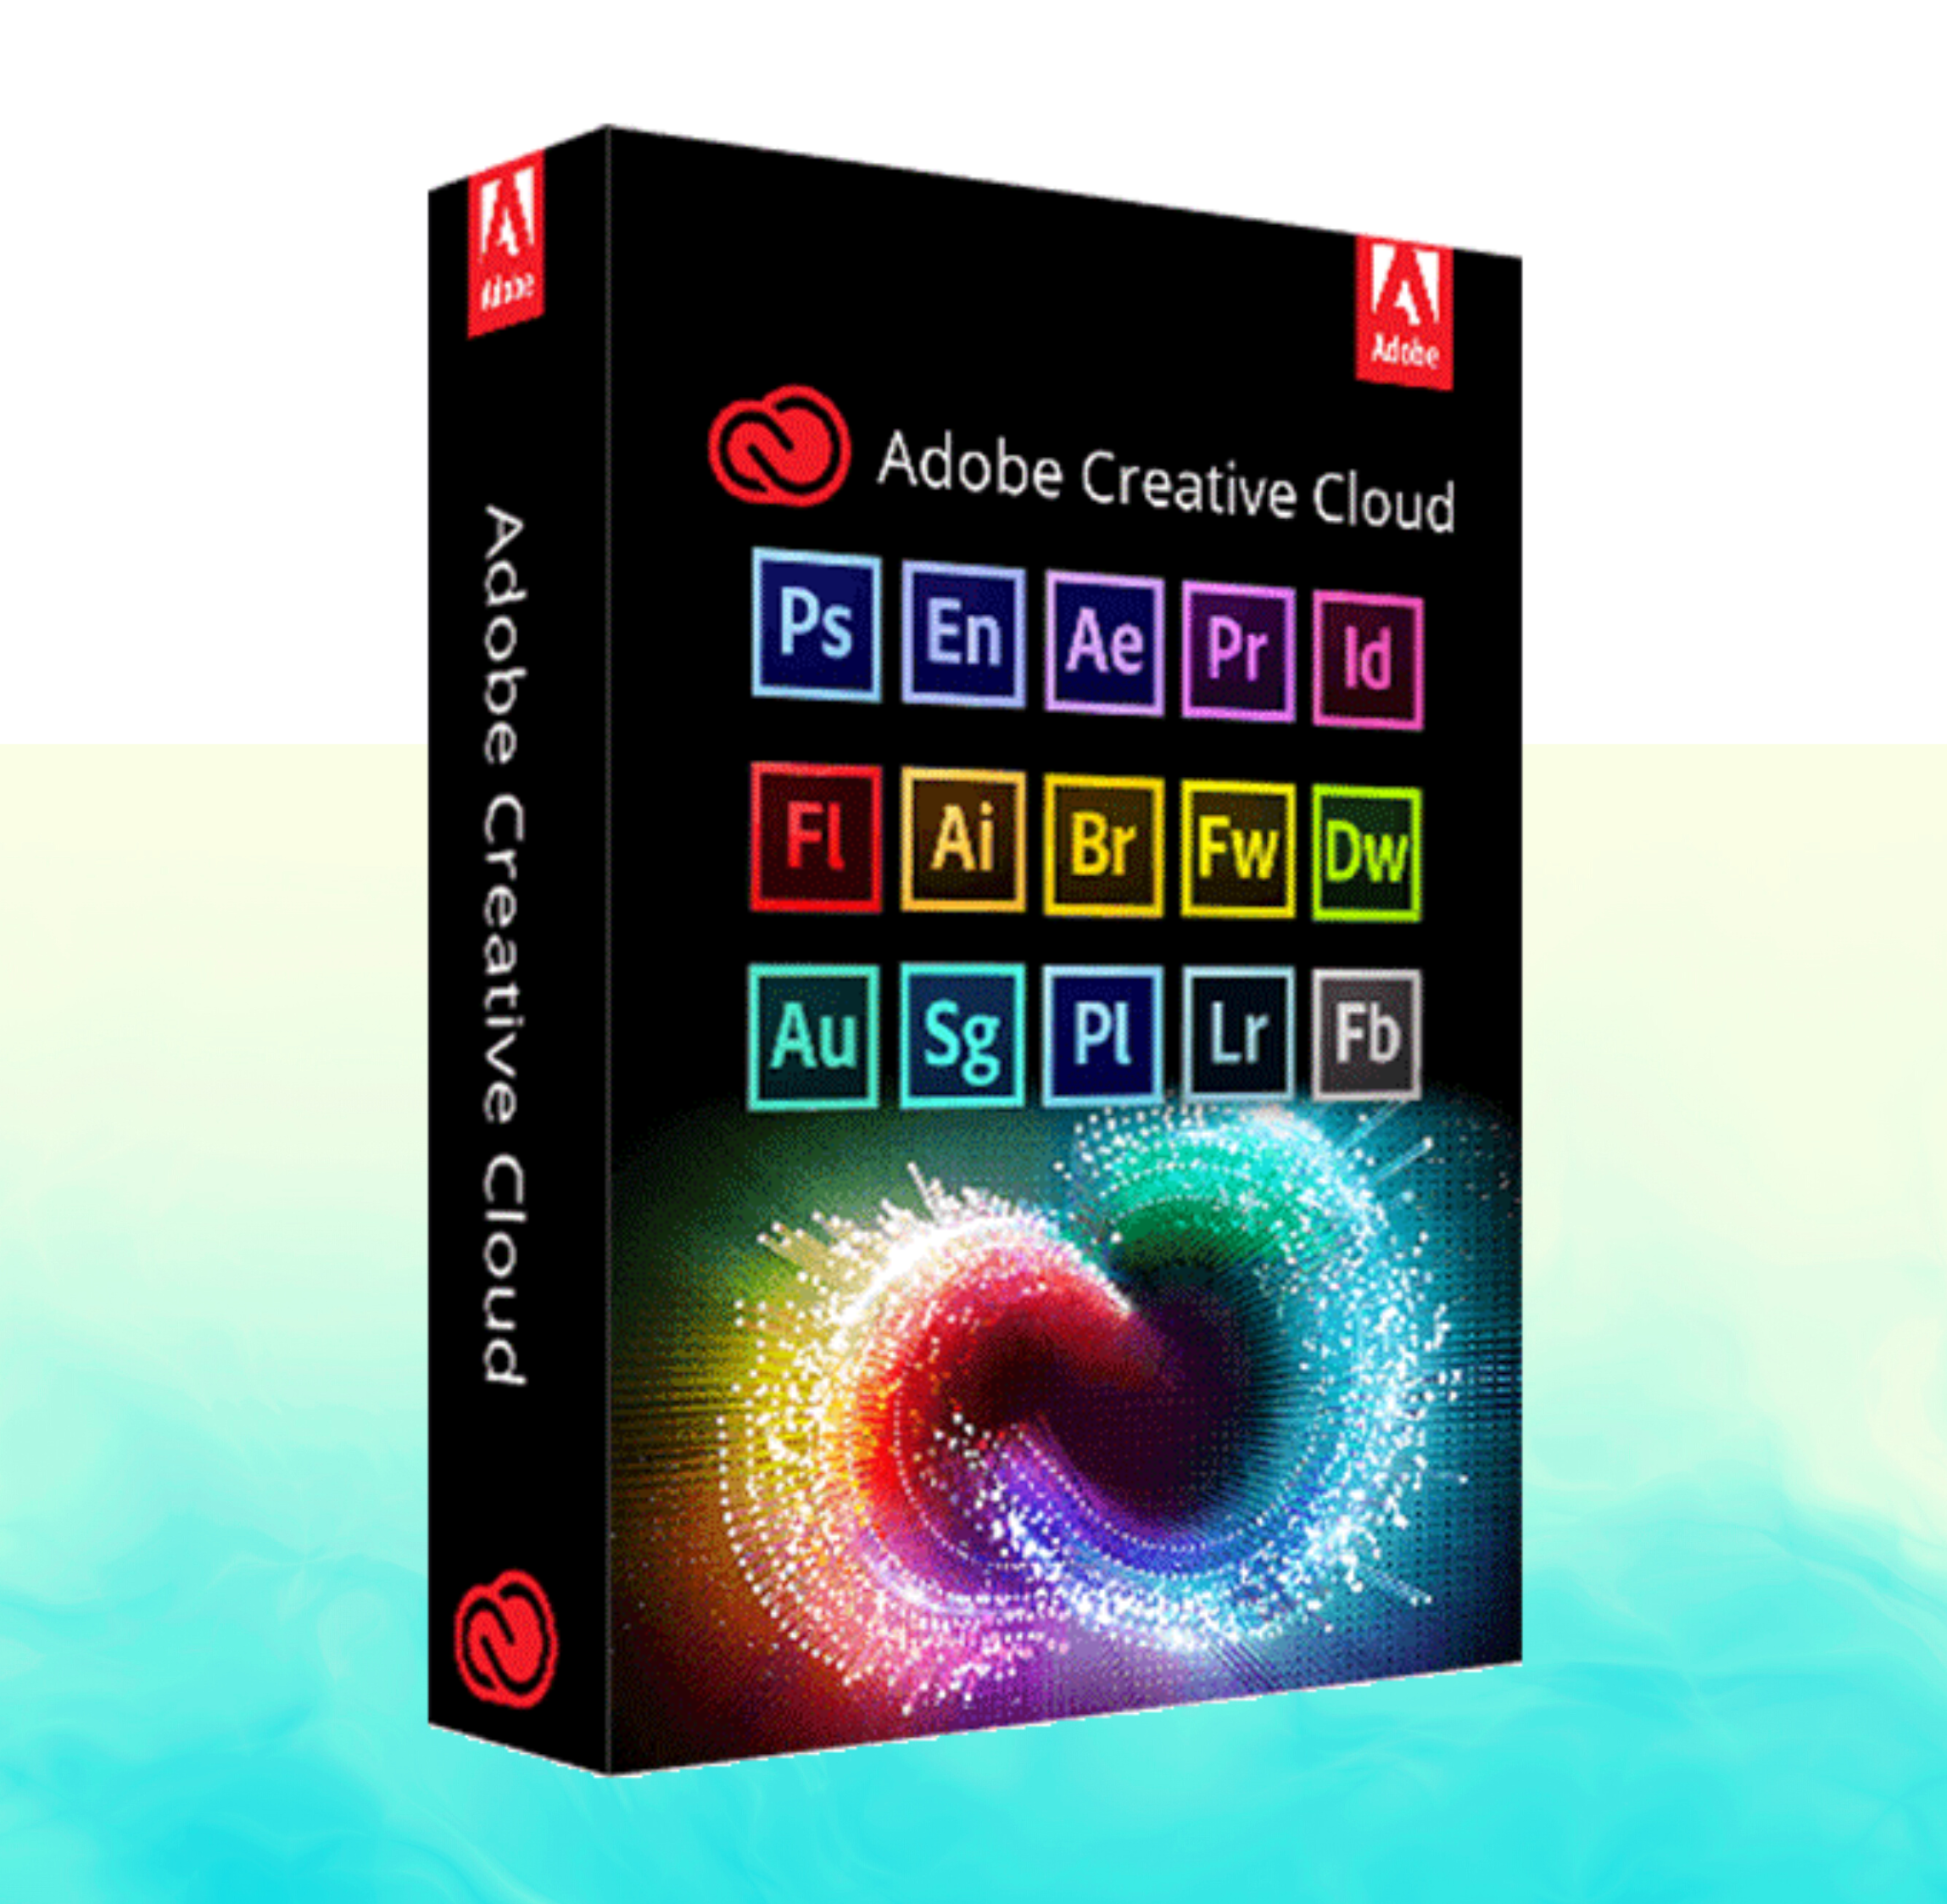 Adobe Master collection 2022. Adobe Creative. Creative cloud. Adobe Creative cloud 2023. Adobe collection 2023